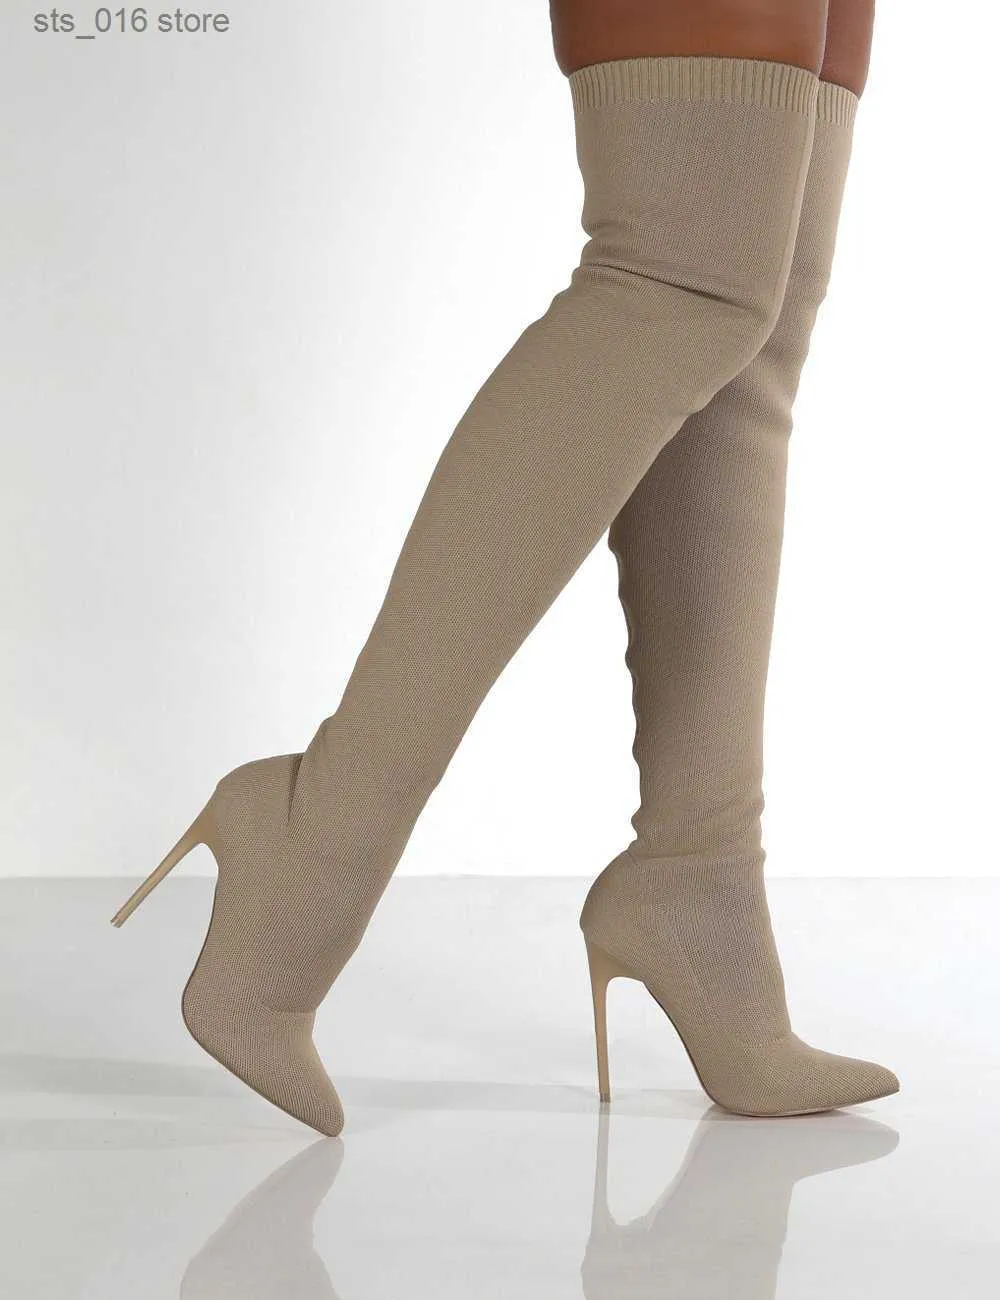 Kvinnor skor knähög sexig hög spets nya klackar upp vinter varm storlek 35-43 2021 modestövlar T230824 335